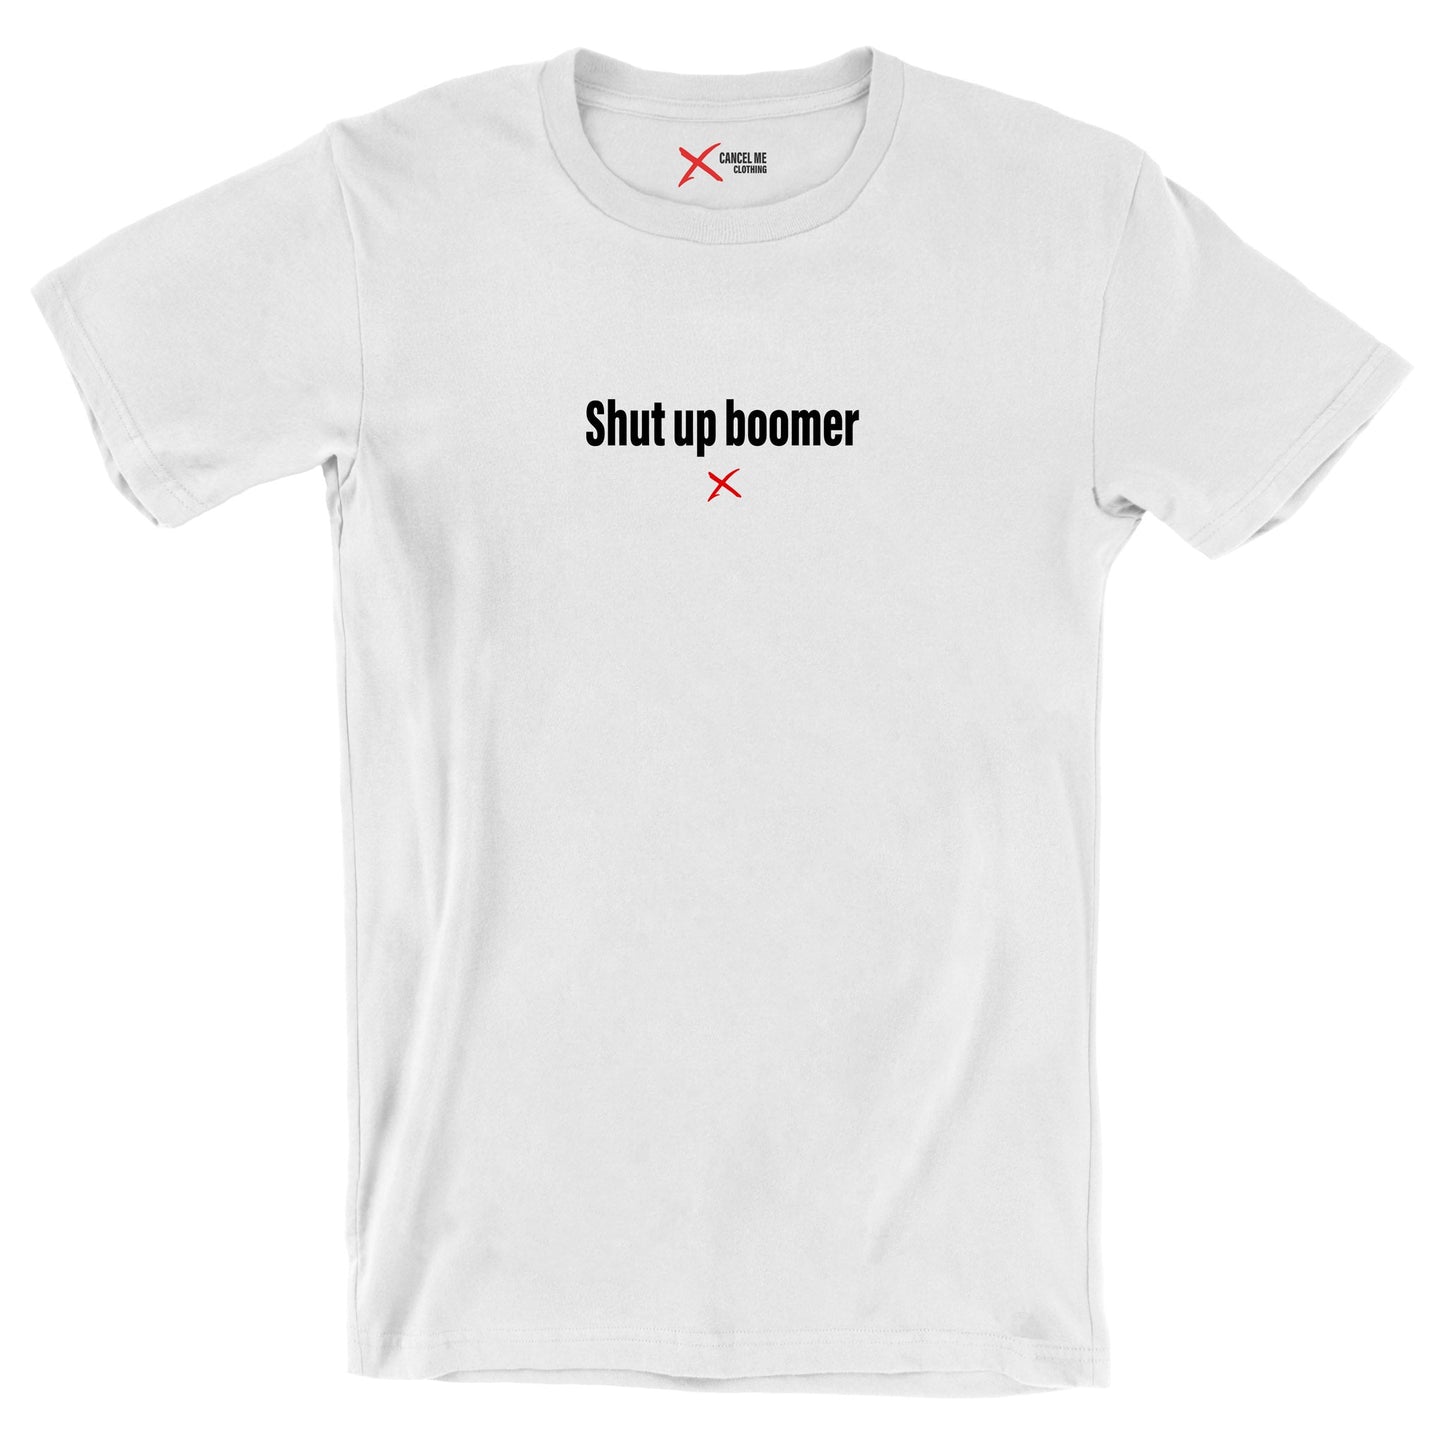 Shut up boomer - Shirt